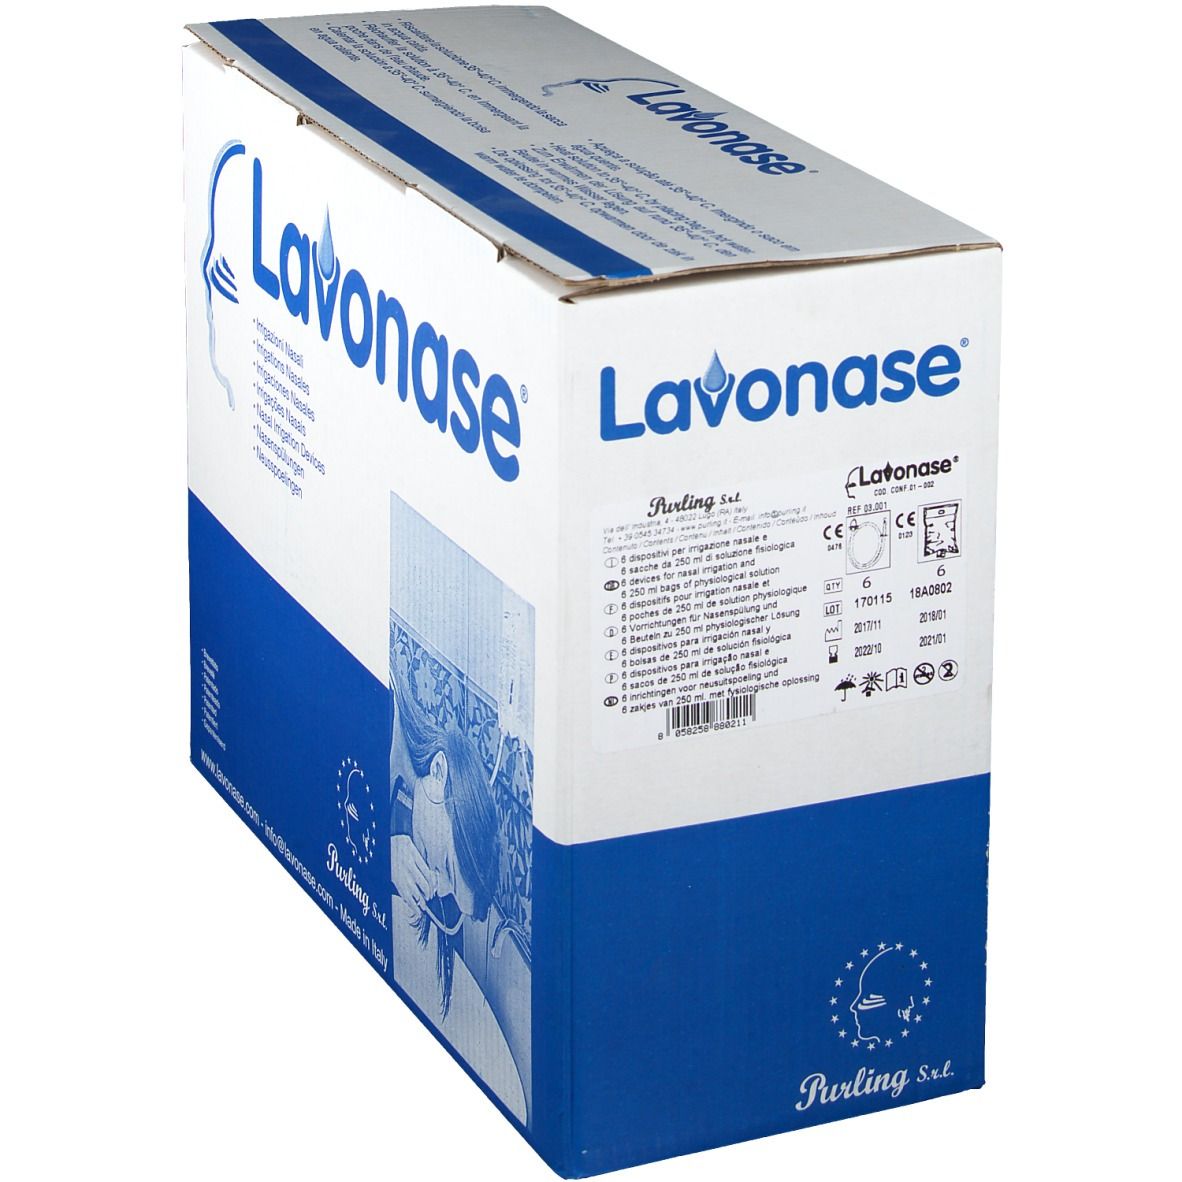 Lavonase® Irrigazione Nasale